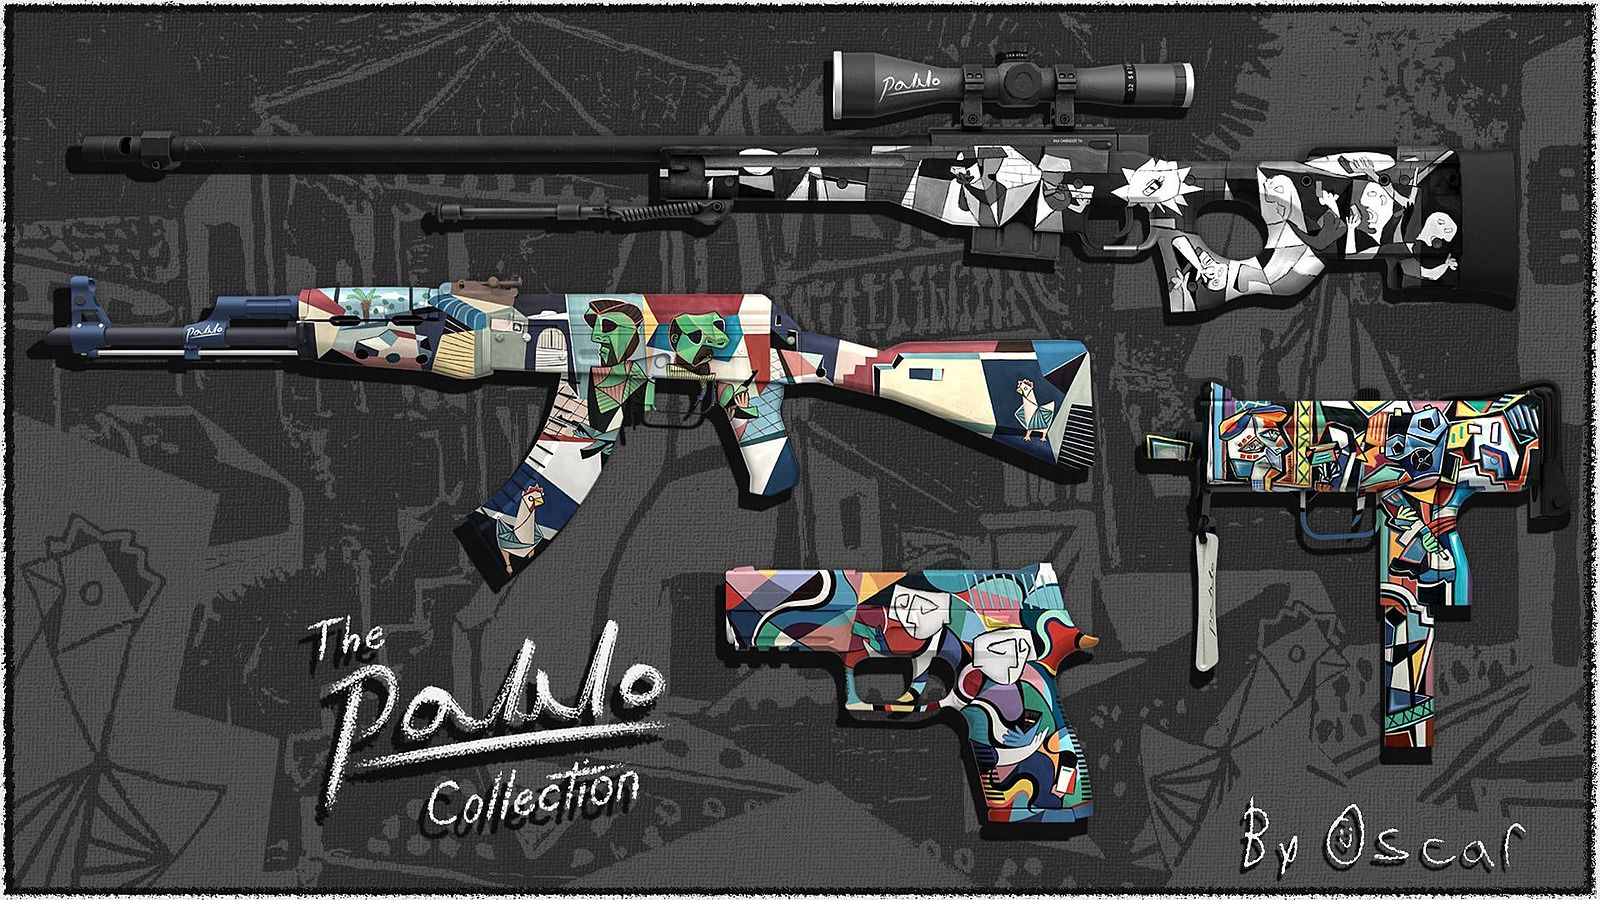 Энтузиаст сделал коллекцию скинов CS:GO в стиле картин Пабло Пикассо